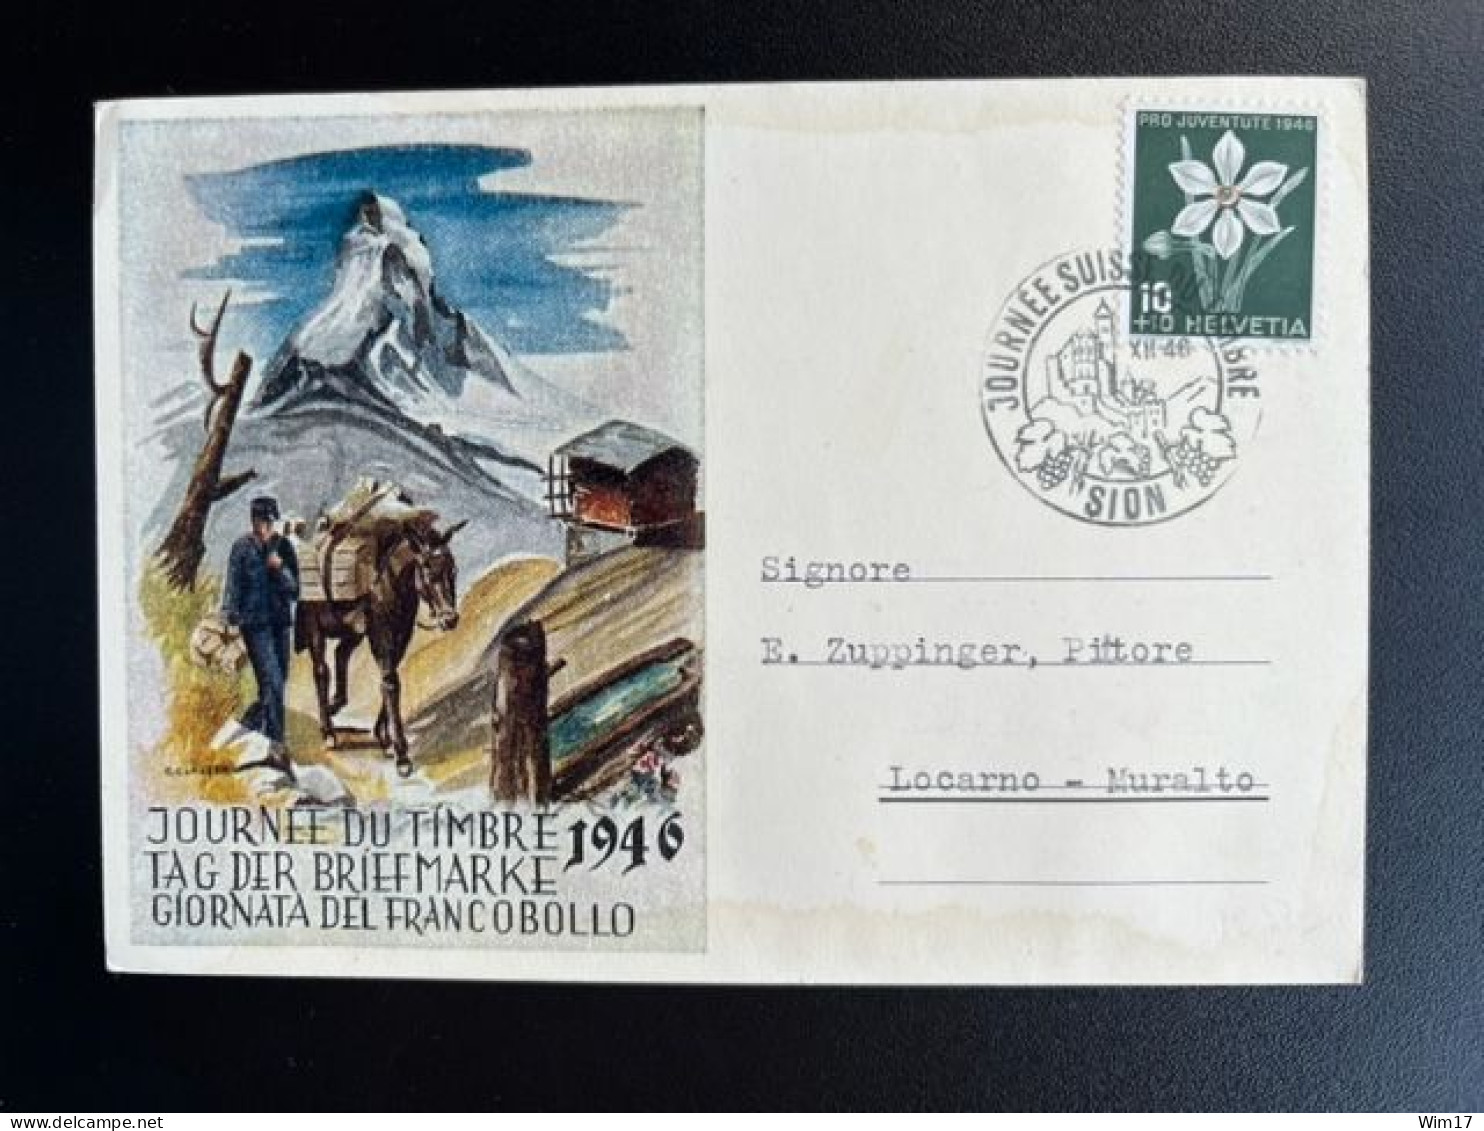 SWITZERLAND 1946 POSTCARD SION TO LOCARNO 08-12-1946 ZWITSERLAND SUISSE SCHWEIZ TAG DER BRIEFMARKE - Entiers Postaux